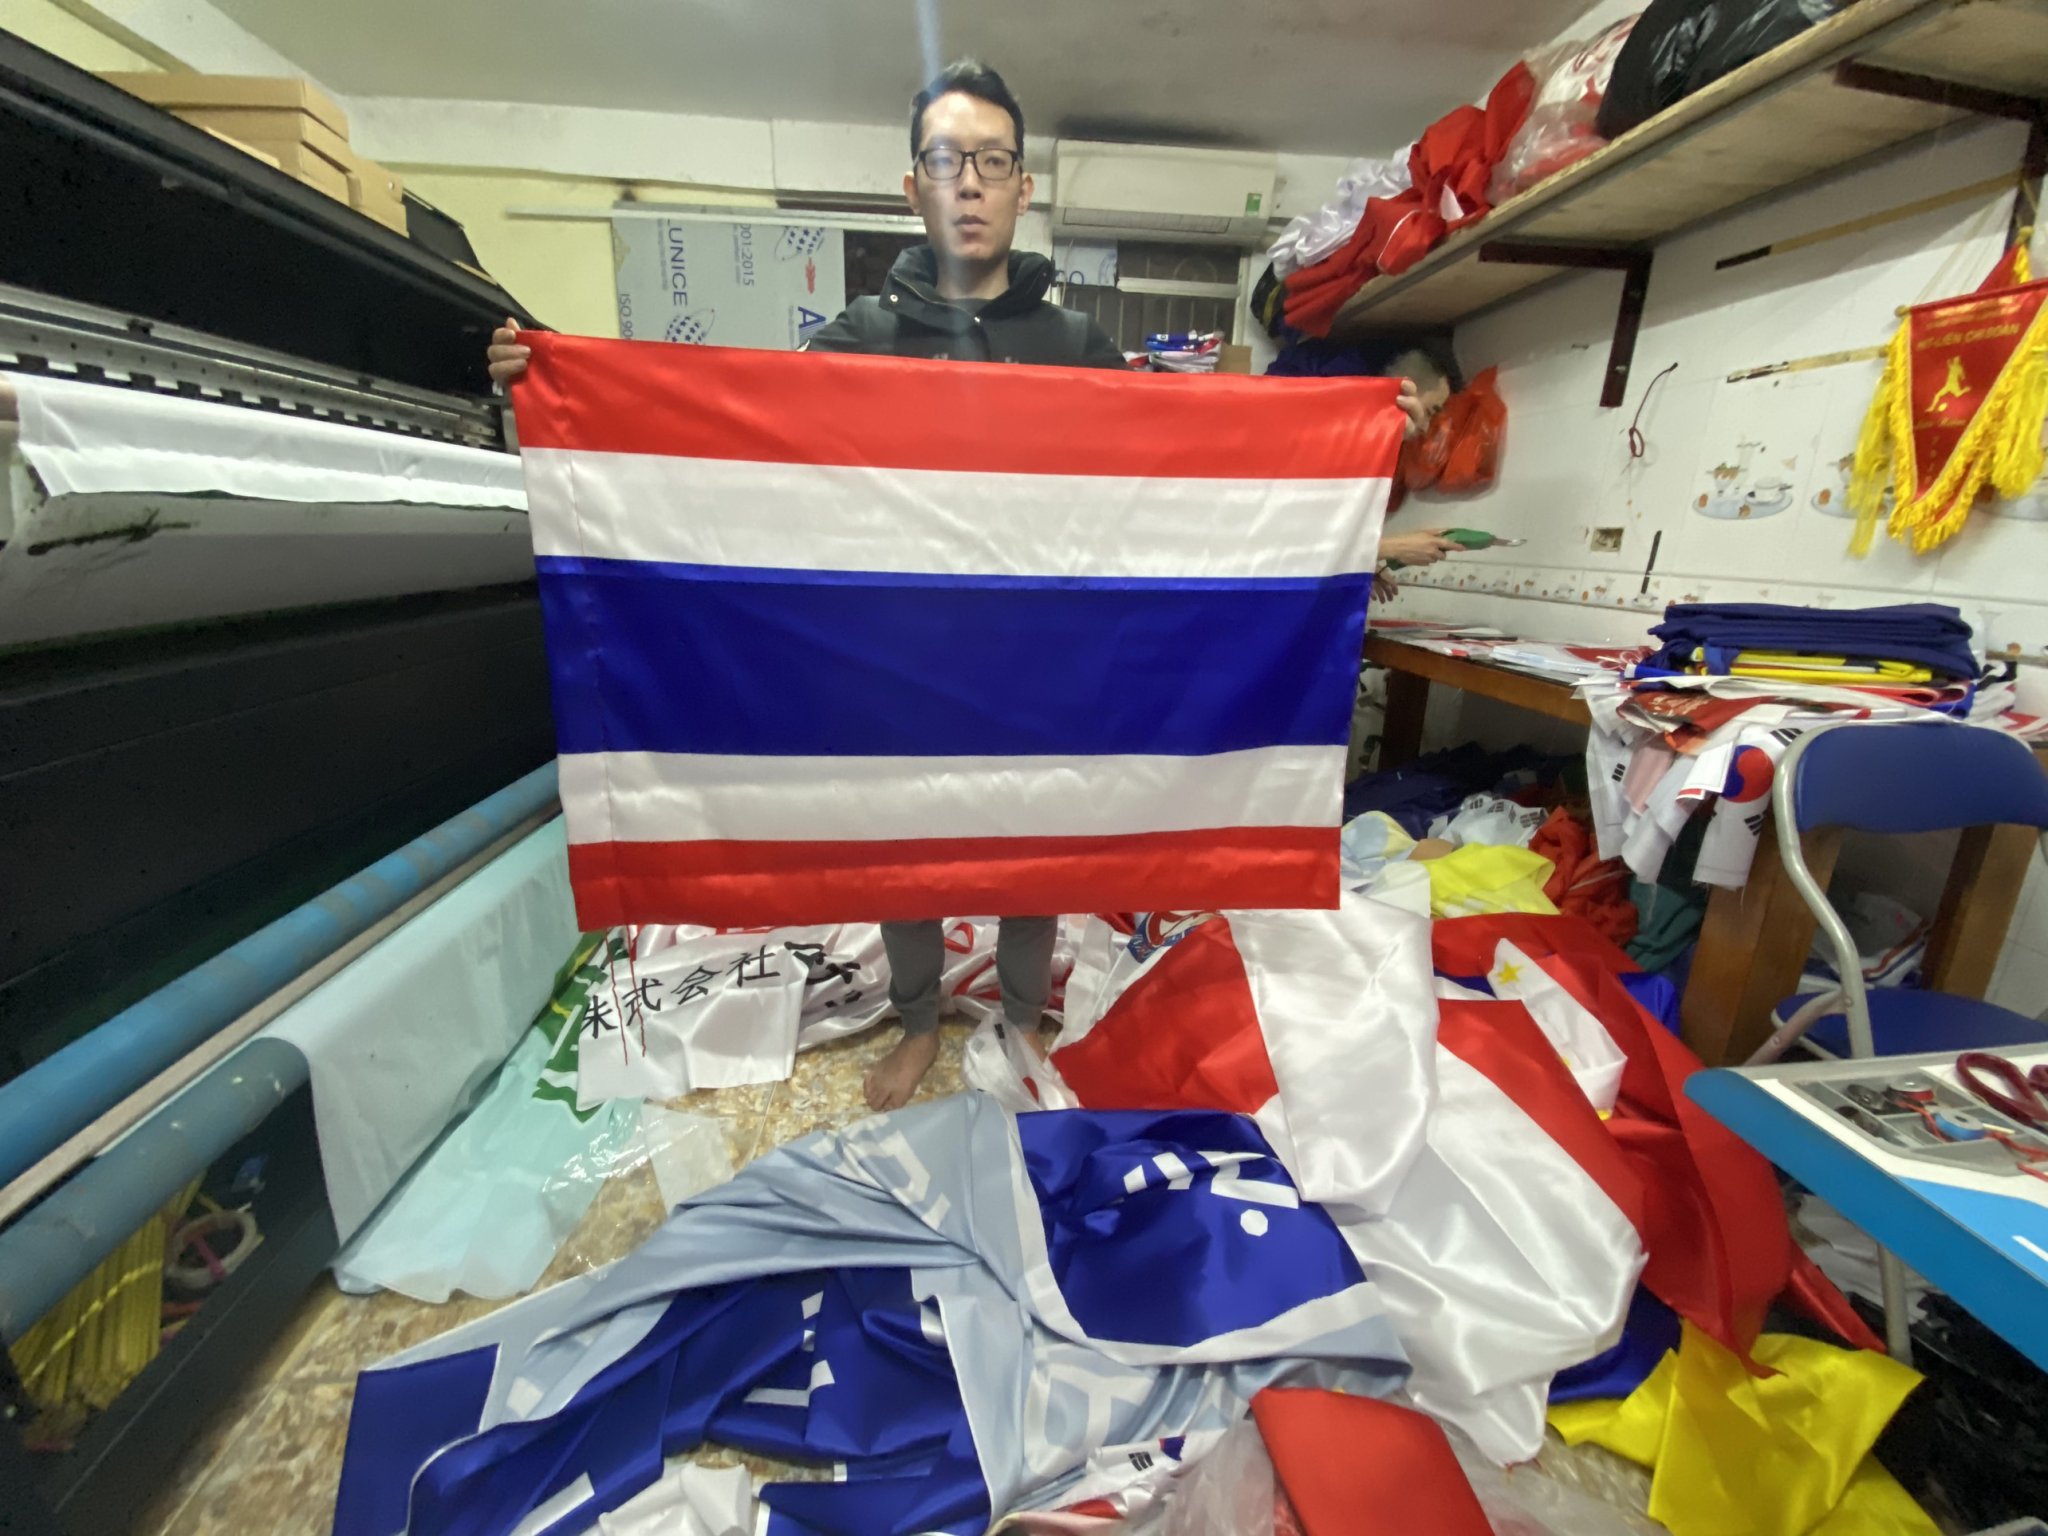 Với sự kiện đặc biệt lần này, bạn sẽ được chiêm ngưỡng cờ Hoàng Gia Thái Lan tuyệt đẹp, được chế tác từ những chất liệu sang trọng và phong cách rực rỡ! Đây là cờ hiếm có được sử dụng trên những dịp đặc biệt và chỉ dành cho Hoàng Gia. Hãy tới và thưởng thức cùng chúng tôi!